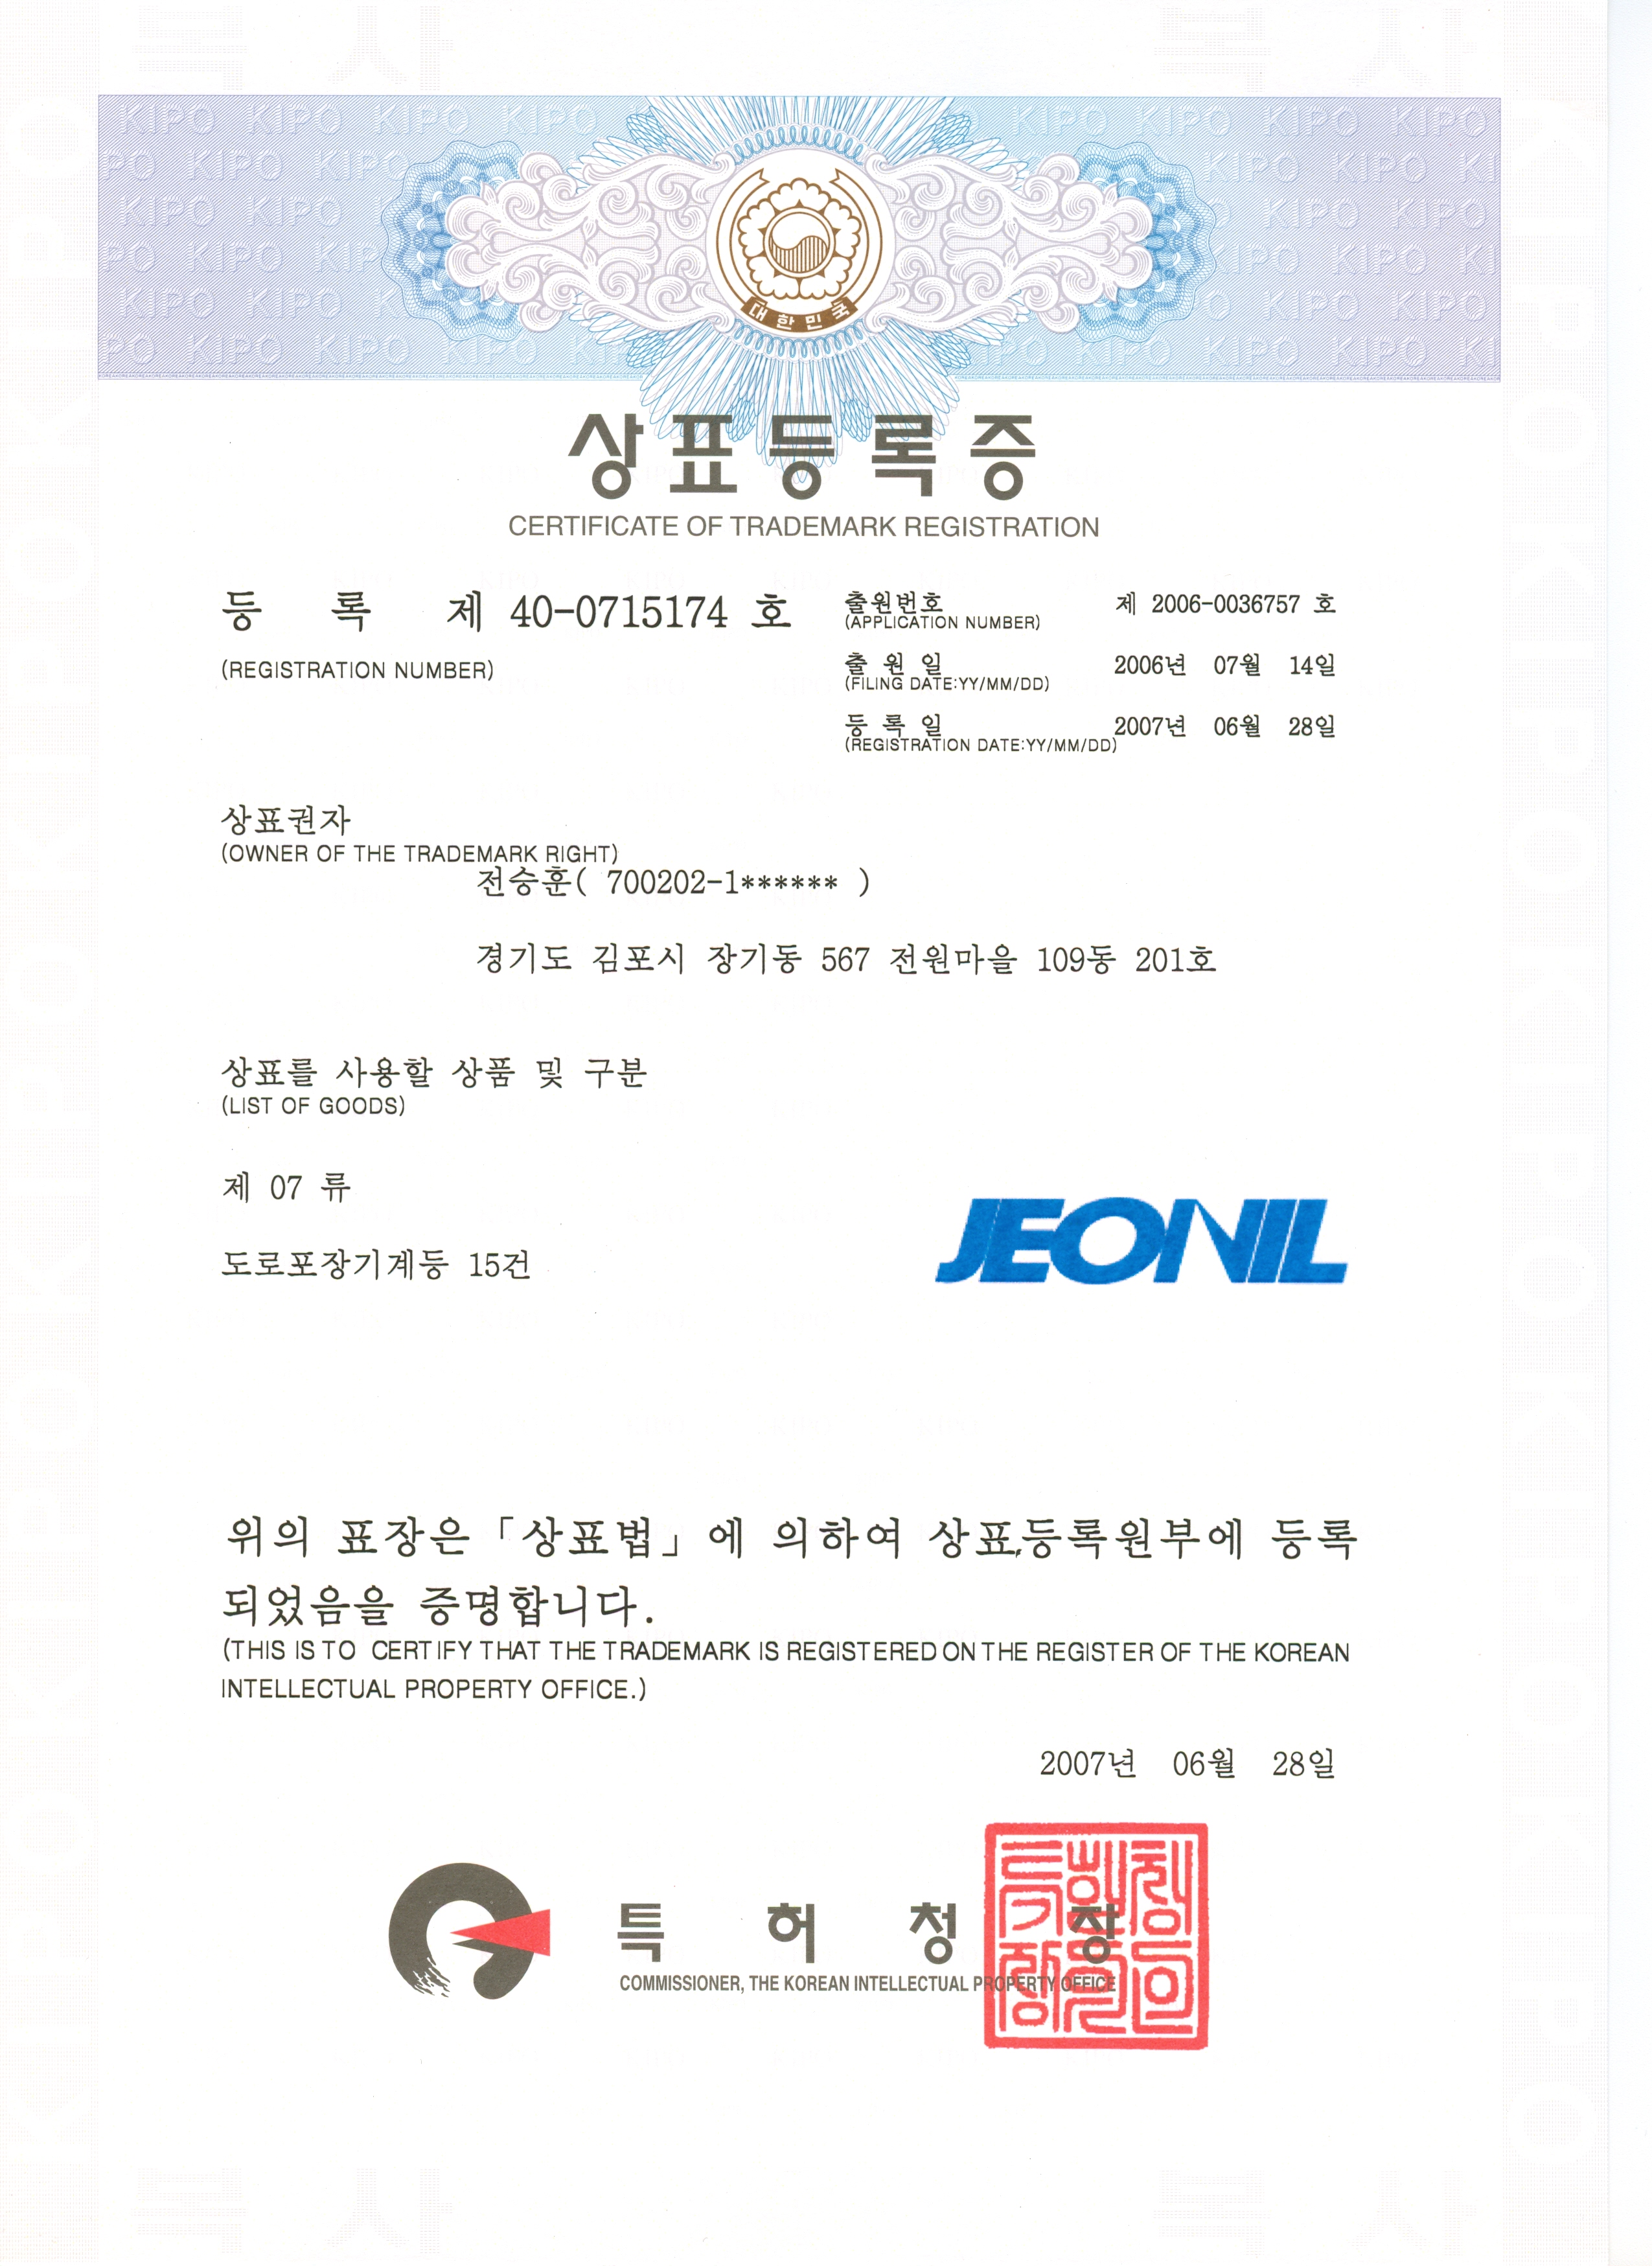 Certificate of Trademark Registration for Jeonil .jpg